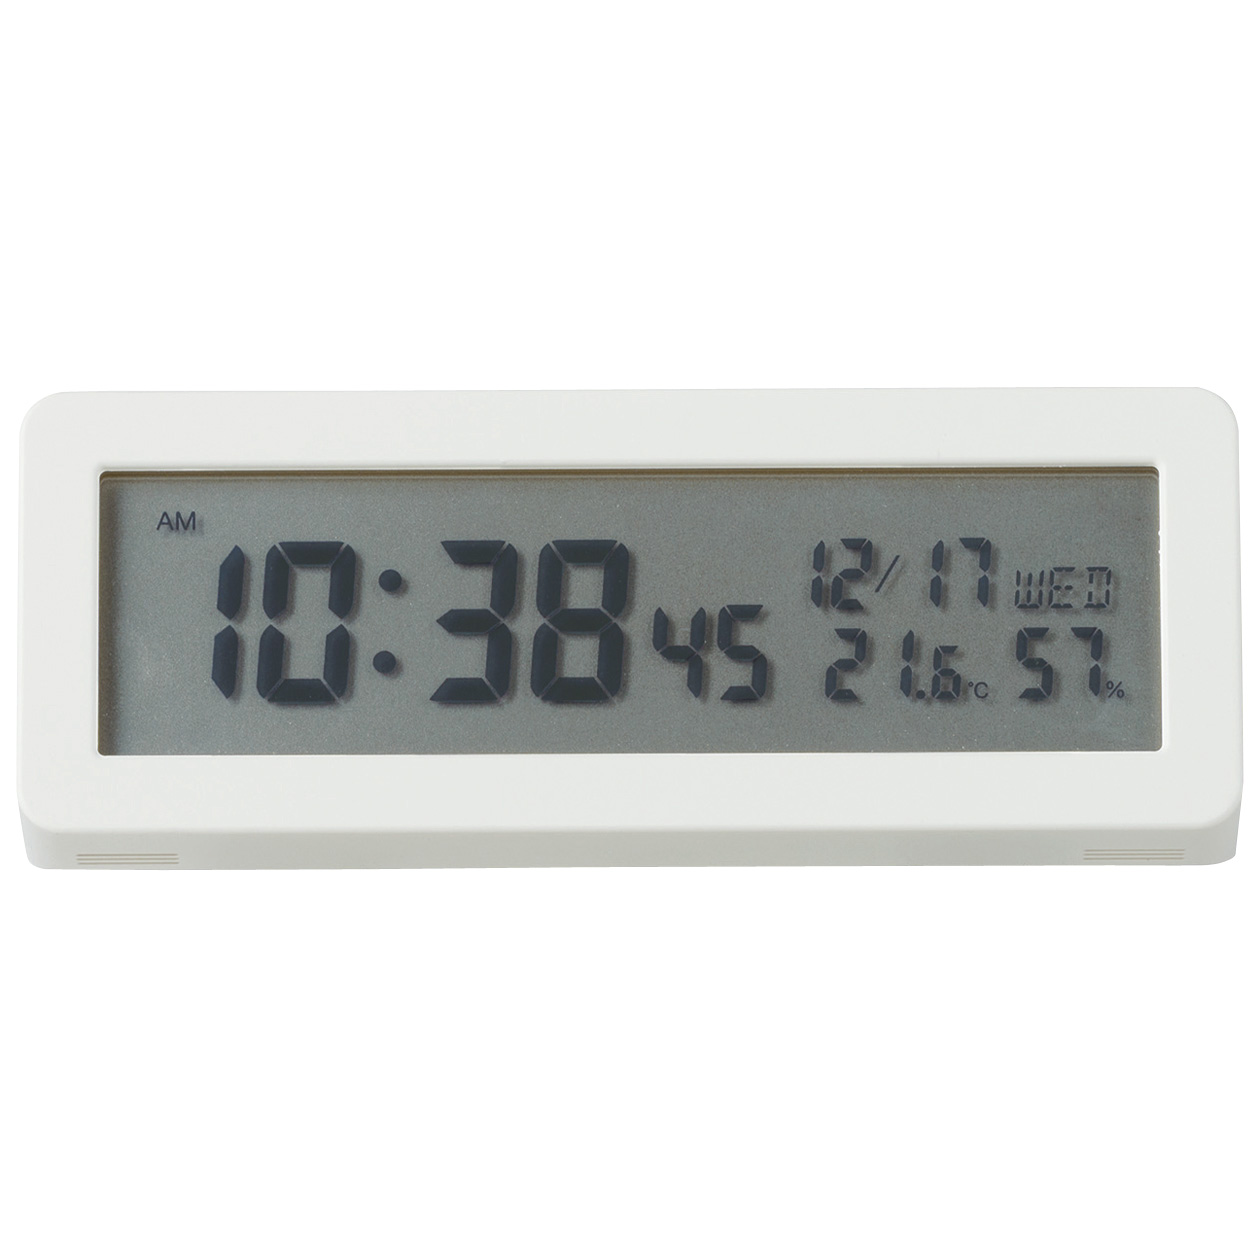 มูจิ นาฬิกาดิจิตอล - MUJI Digital Clock (With Loud Alarm)